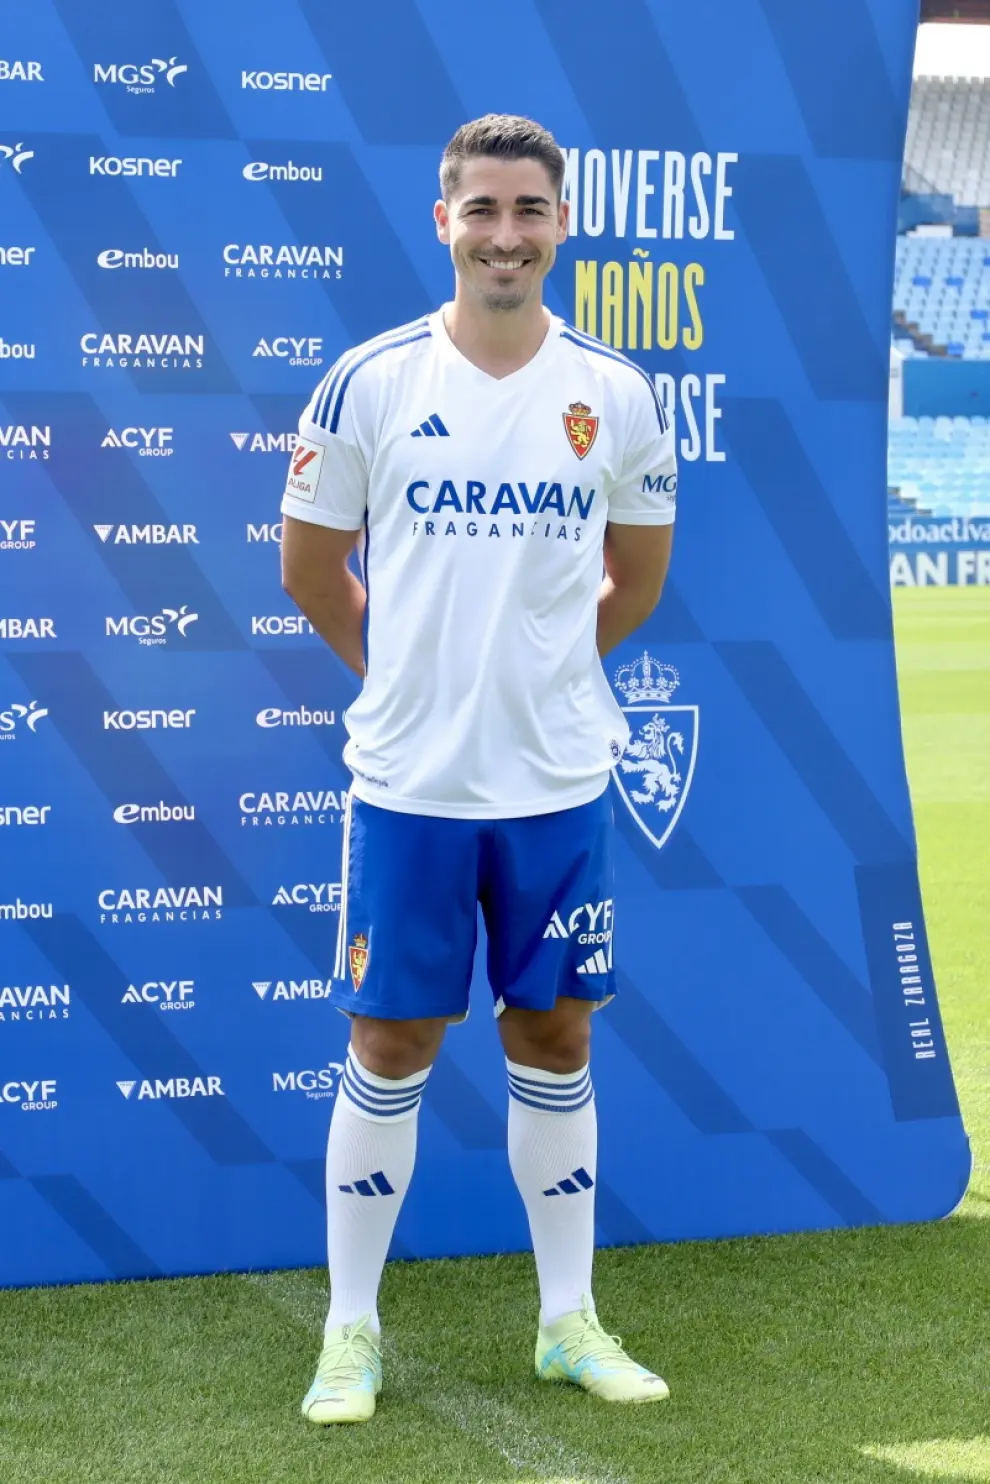 Presentación de Toni Moya, nuevo jugador del Real Zaragoza